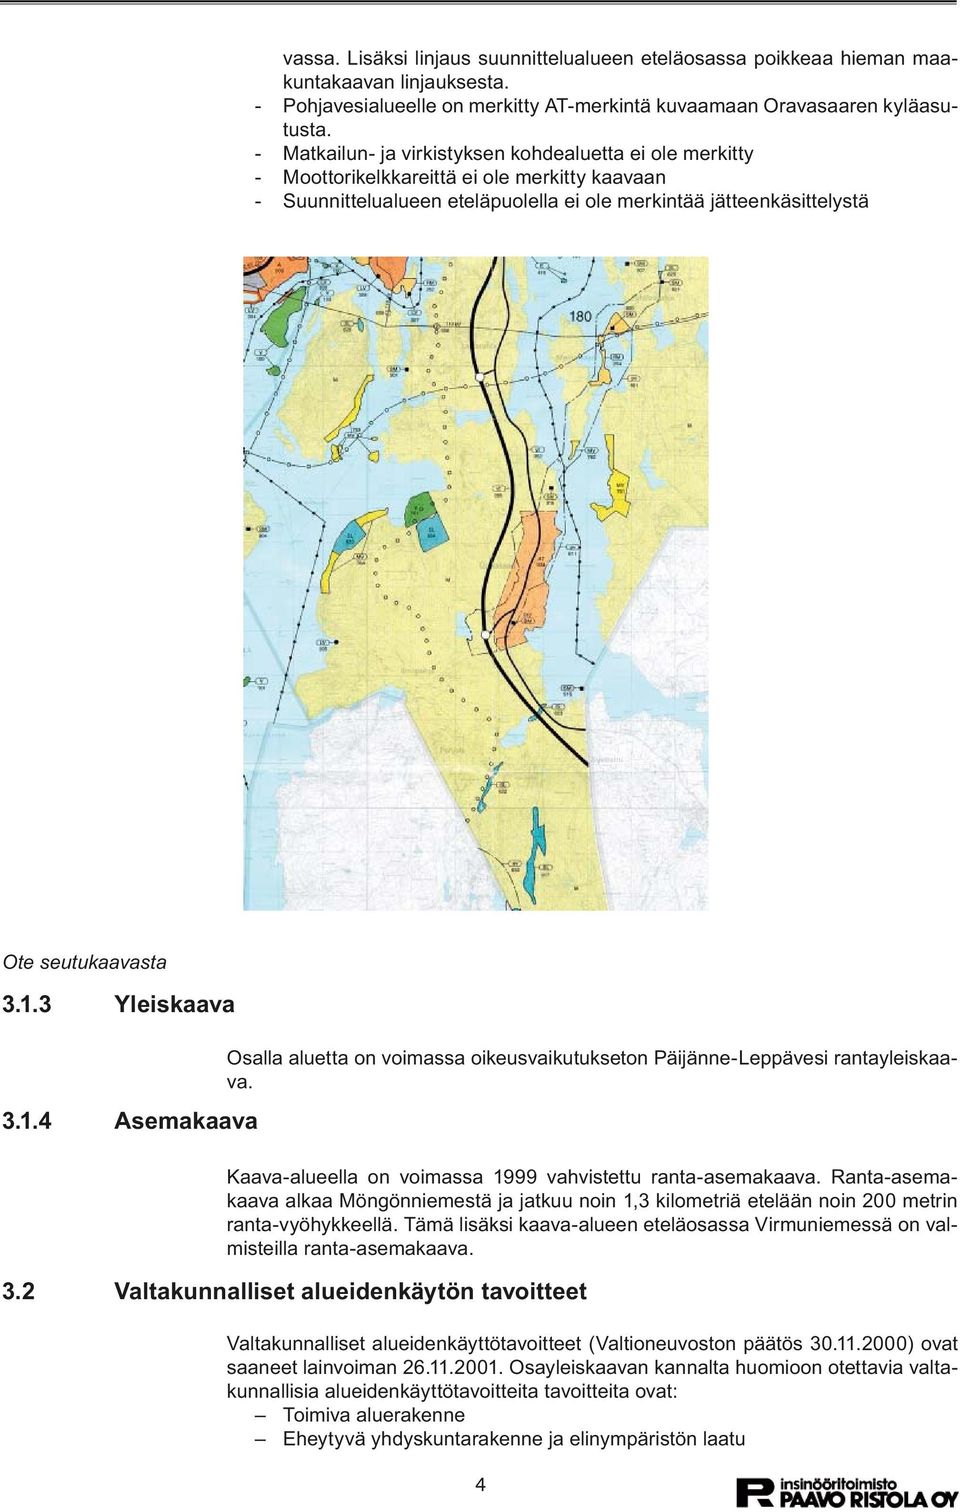 3 Yleiskaava 3.1.4 Asemakaava Osalla aluetta on voimassa oikeusvaikutukseton Päijänne-Leppävesi rantayleiskaava. Kaava-alueella on voimassa 1999 vahvistettu ranta-asemakaava.